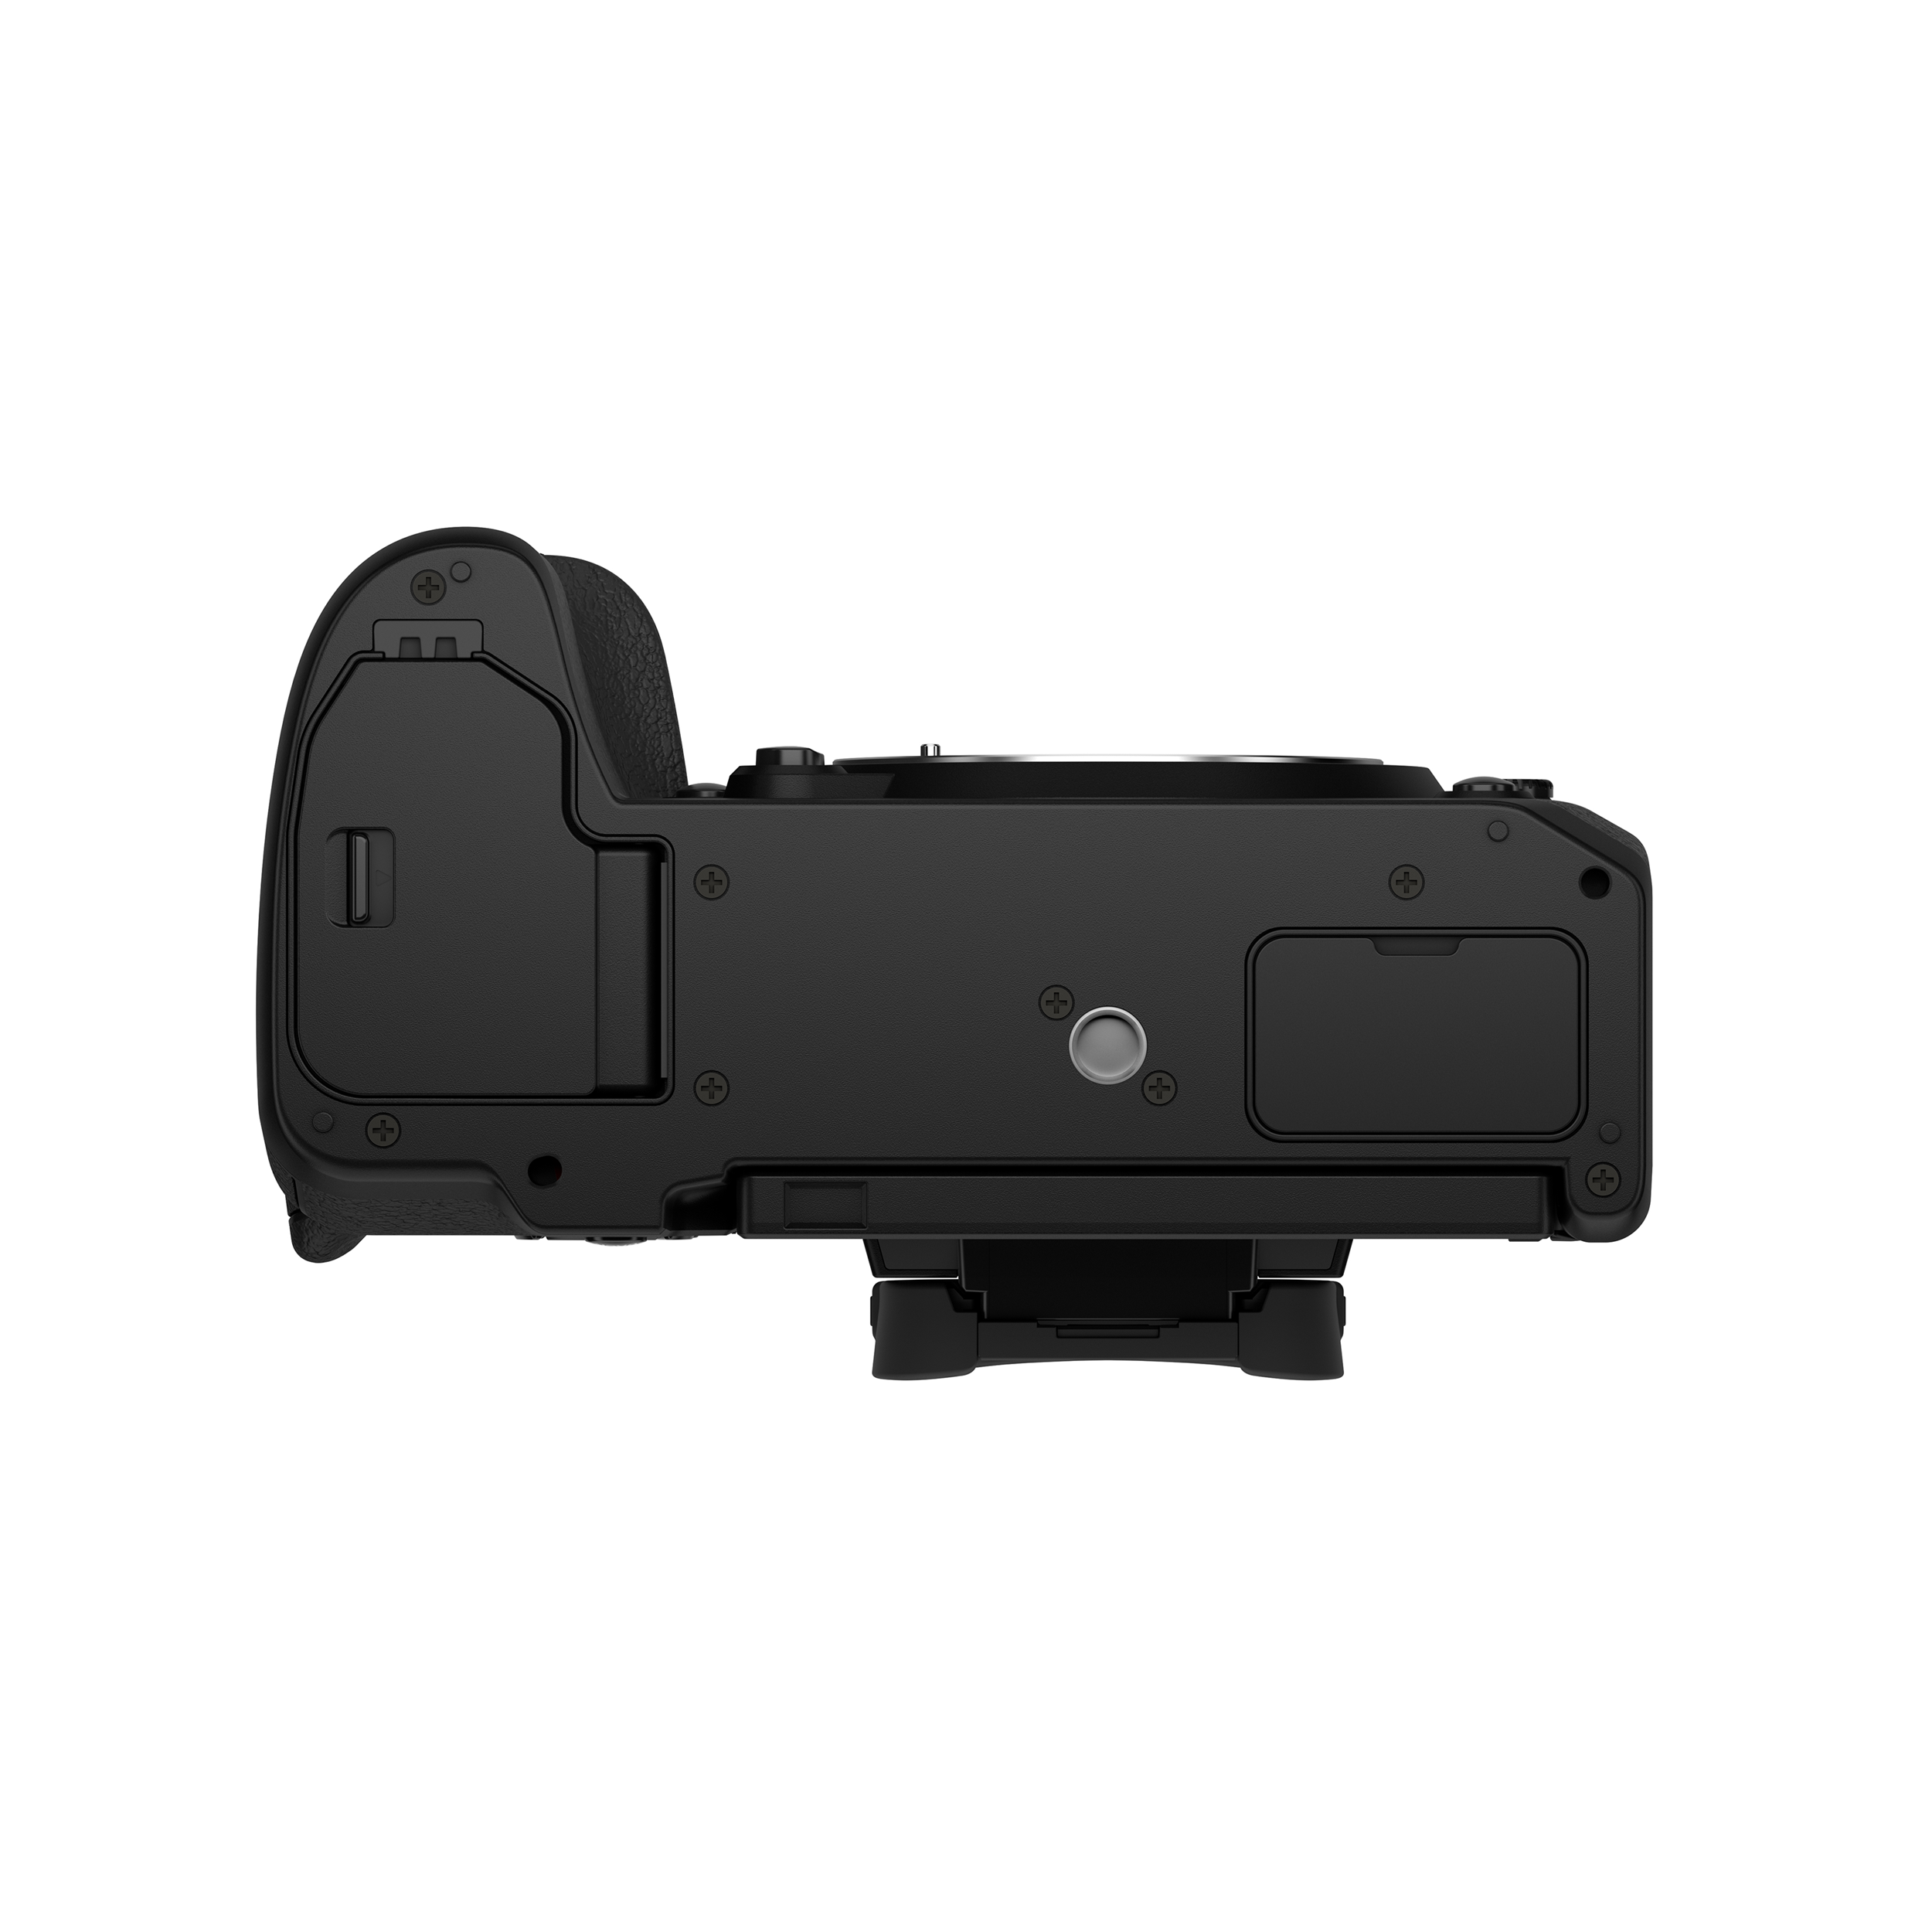 Caméra sans miroir Fujifilm X-H2 Boîtier, Le noir